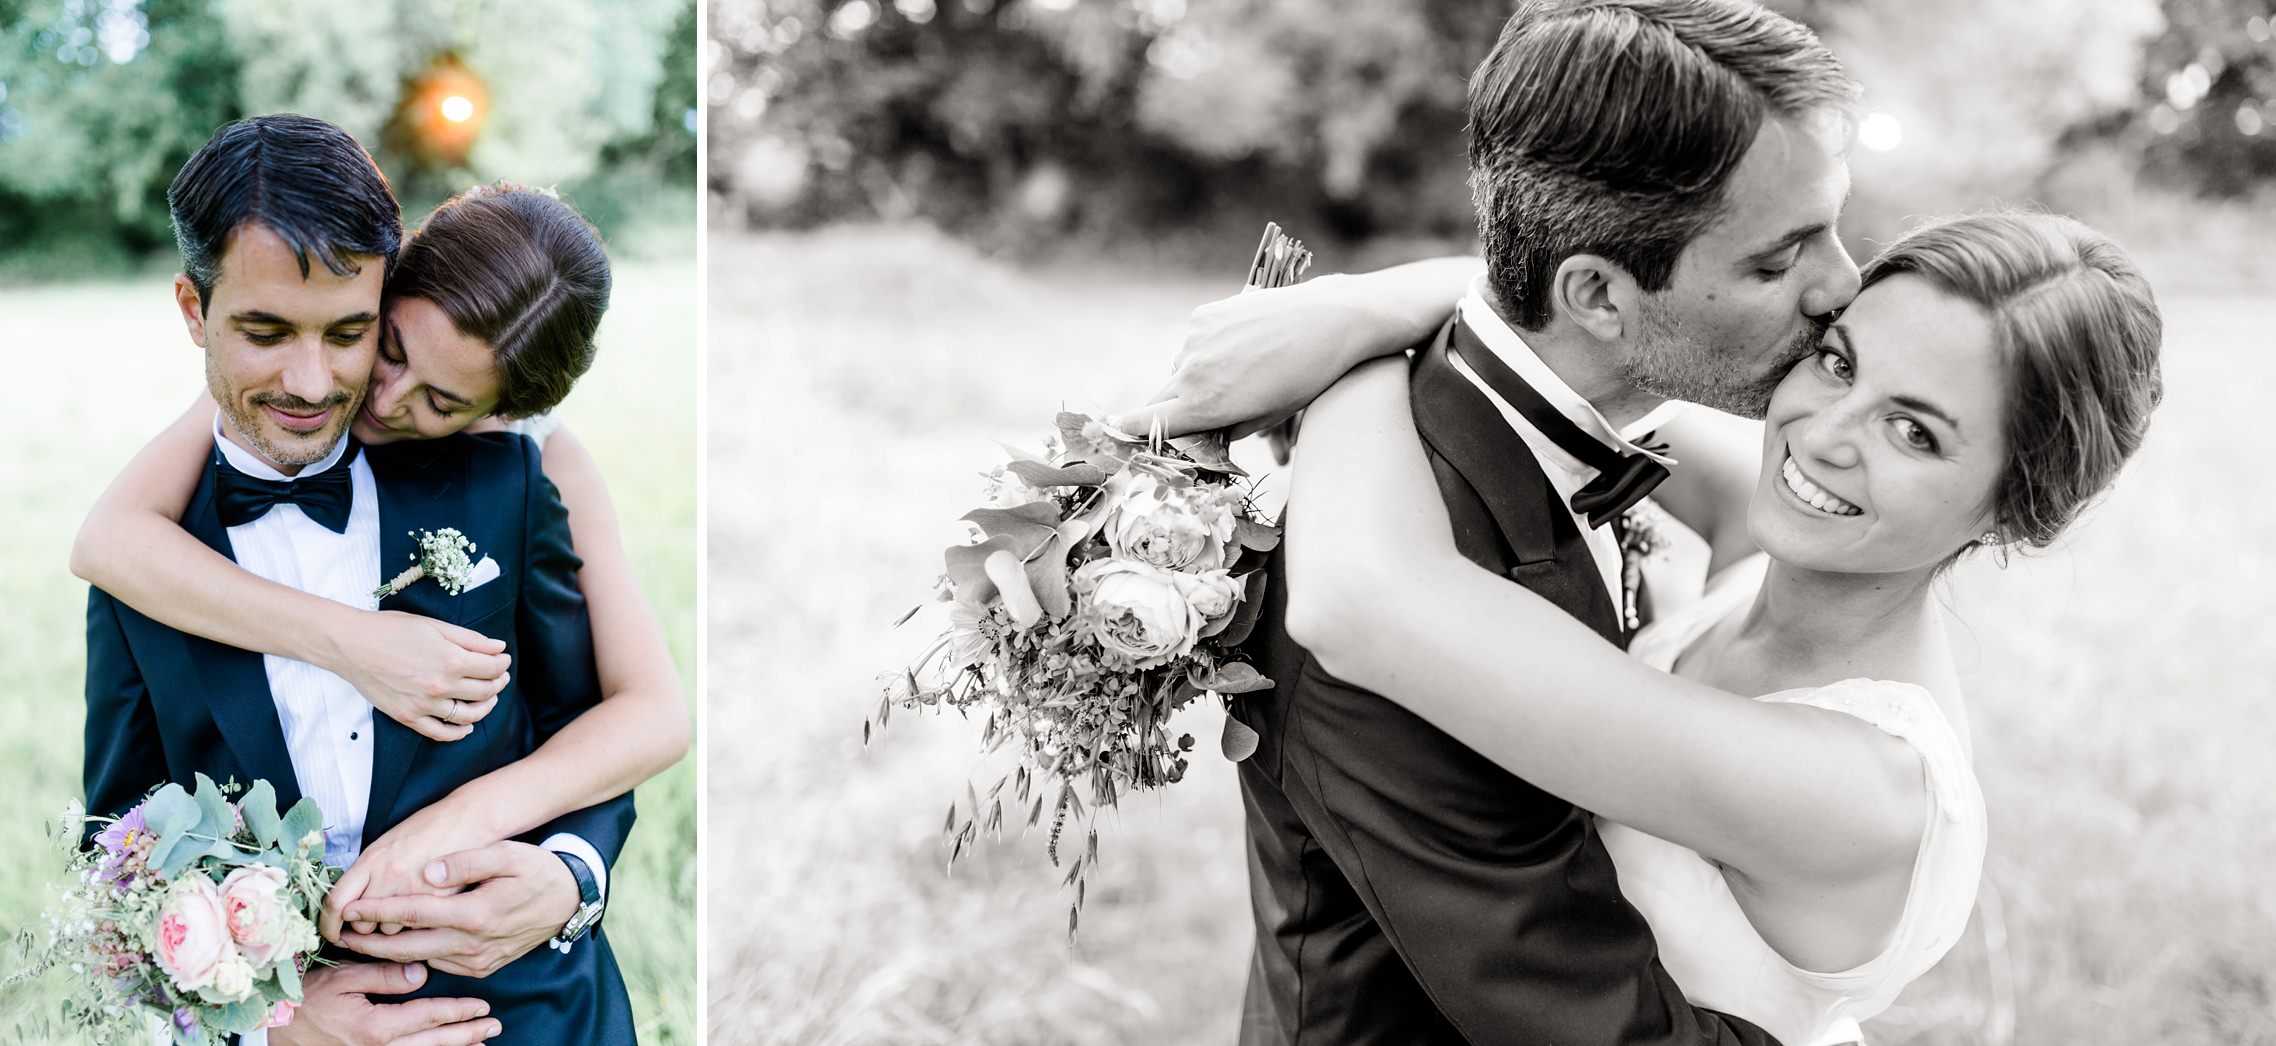 Romantisches Brautpaar welches sich beim Fotoshooting umarmt